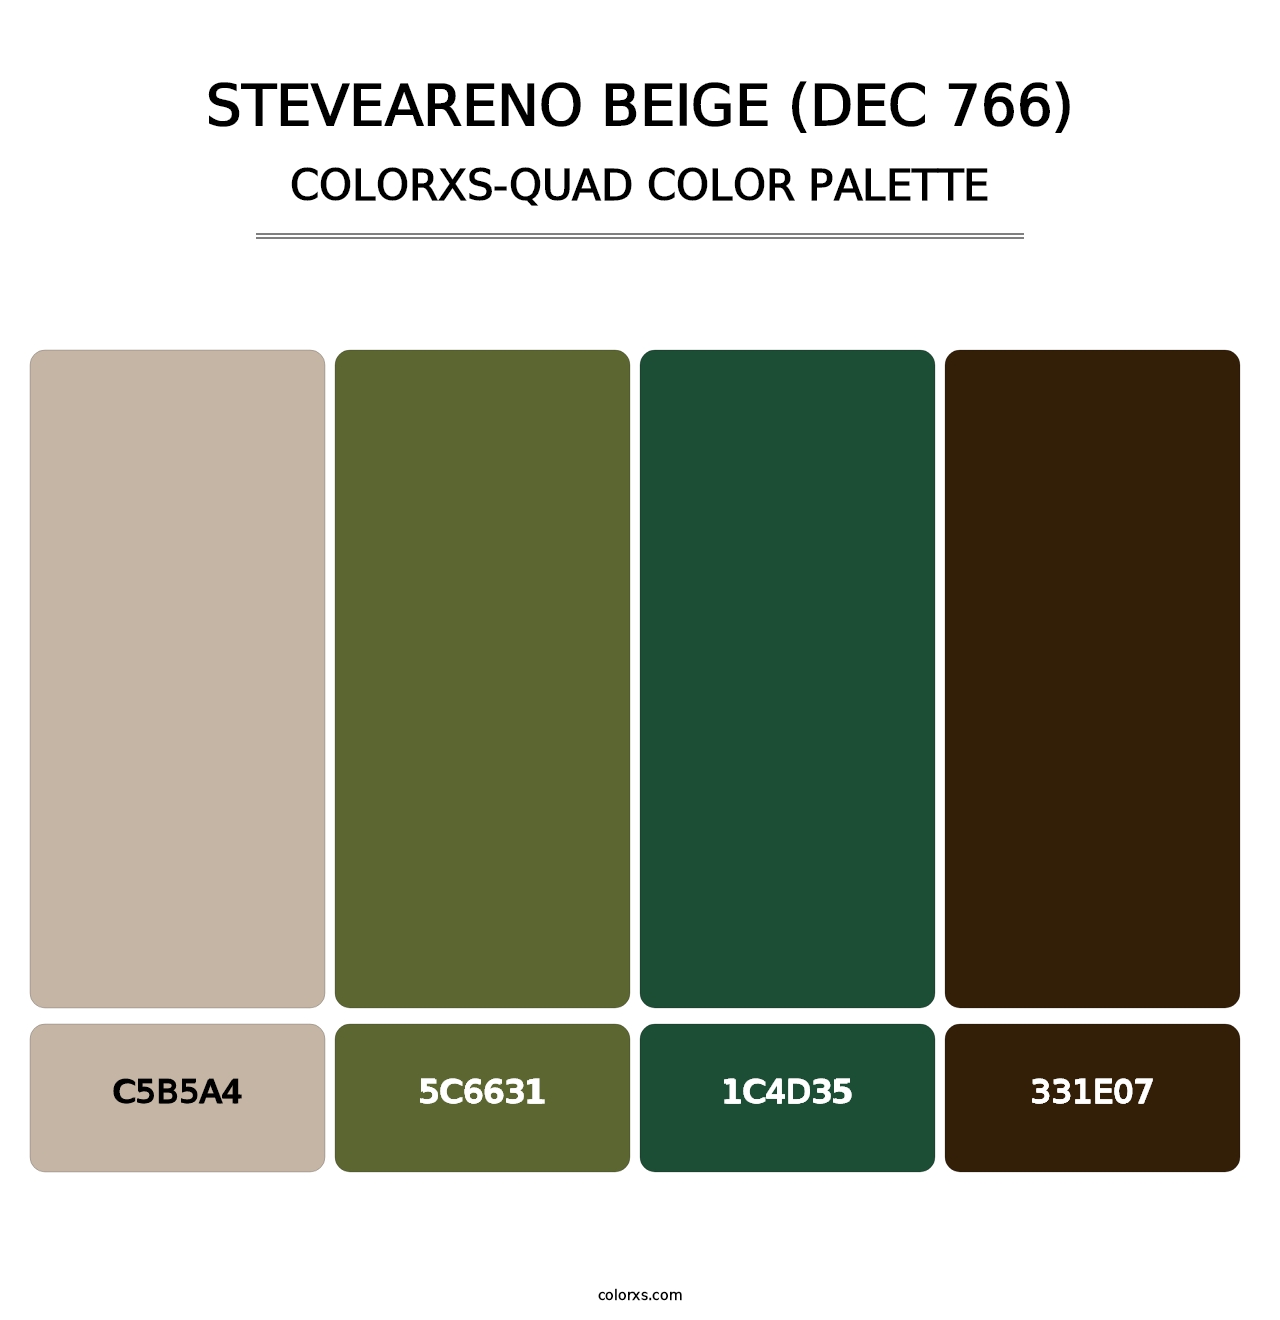 Steveareno Beige (DEC 766) - Colorxs Quad Palette